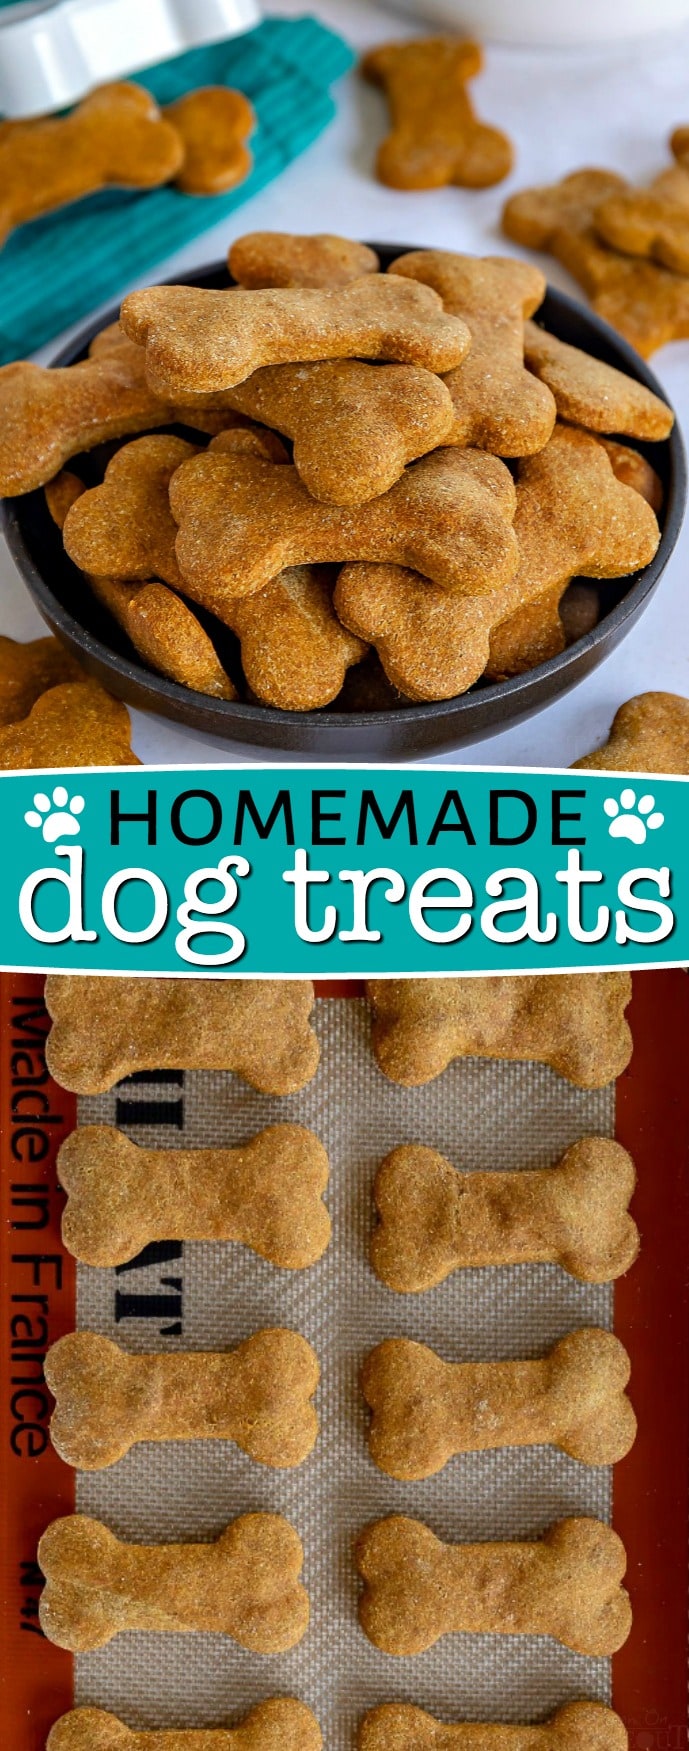 dog treats to make at home